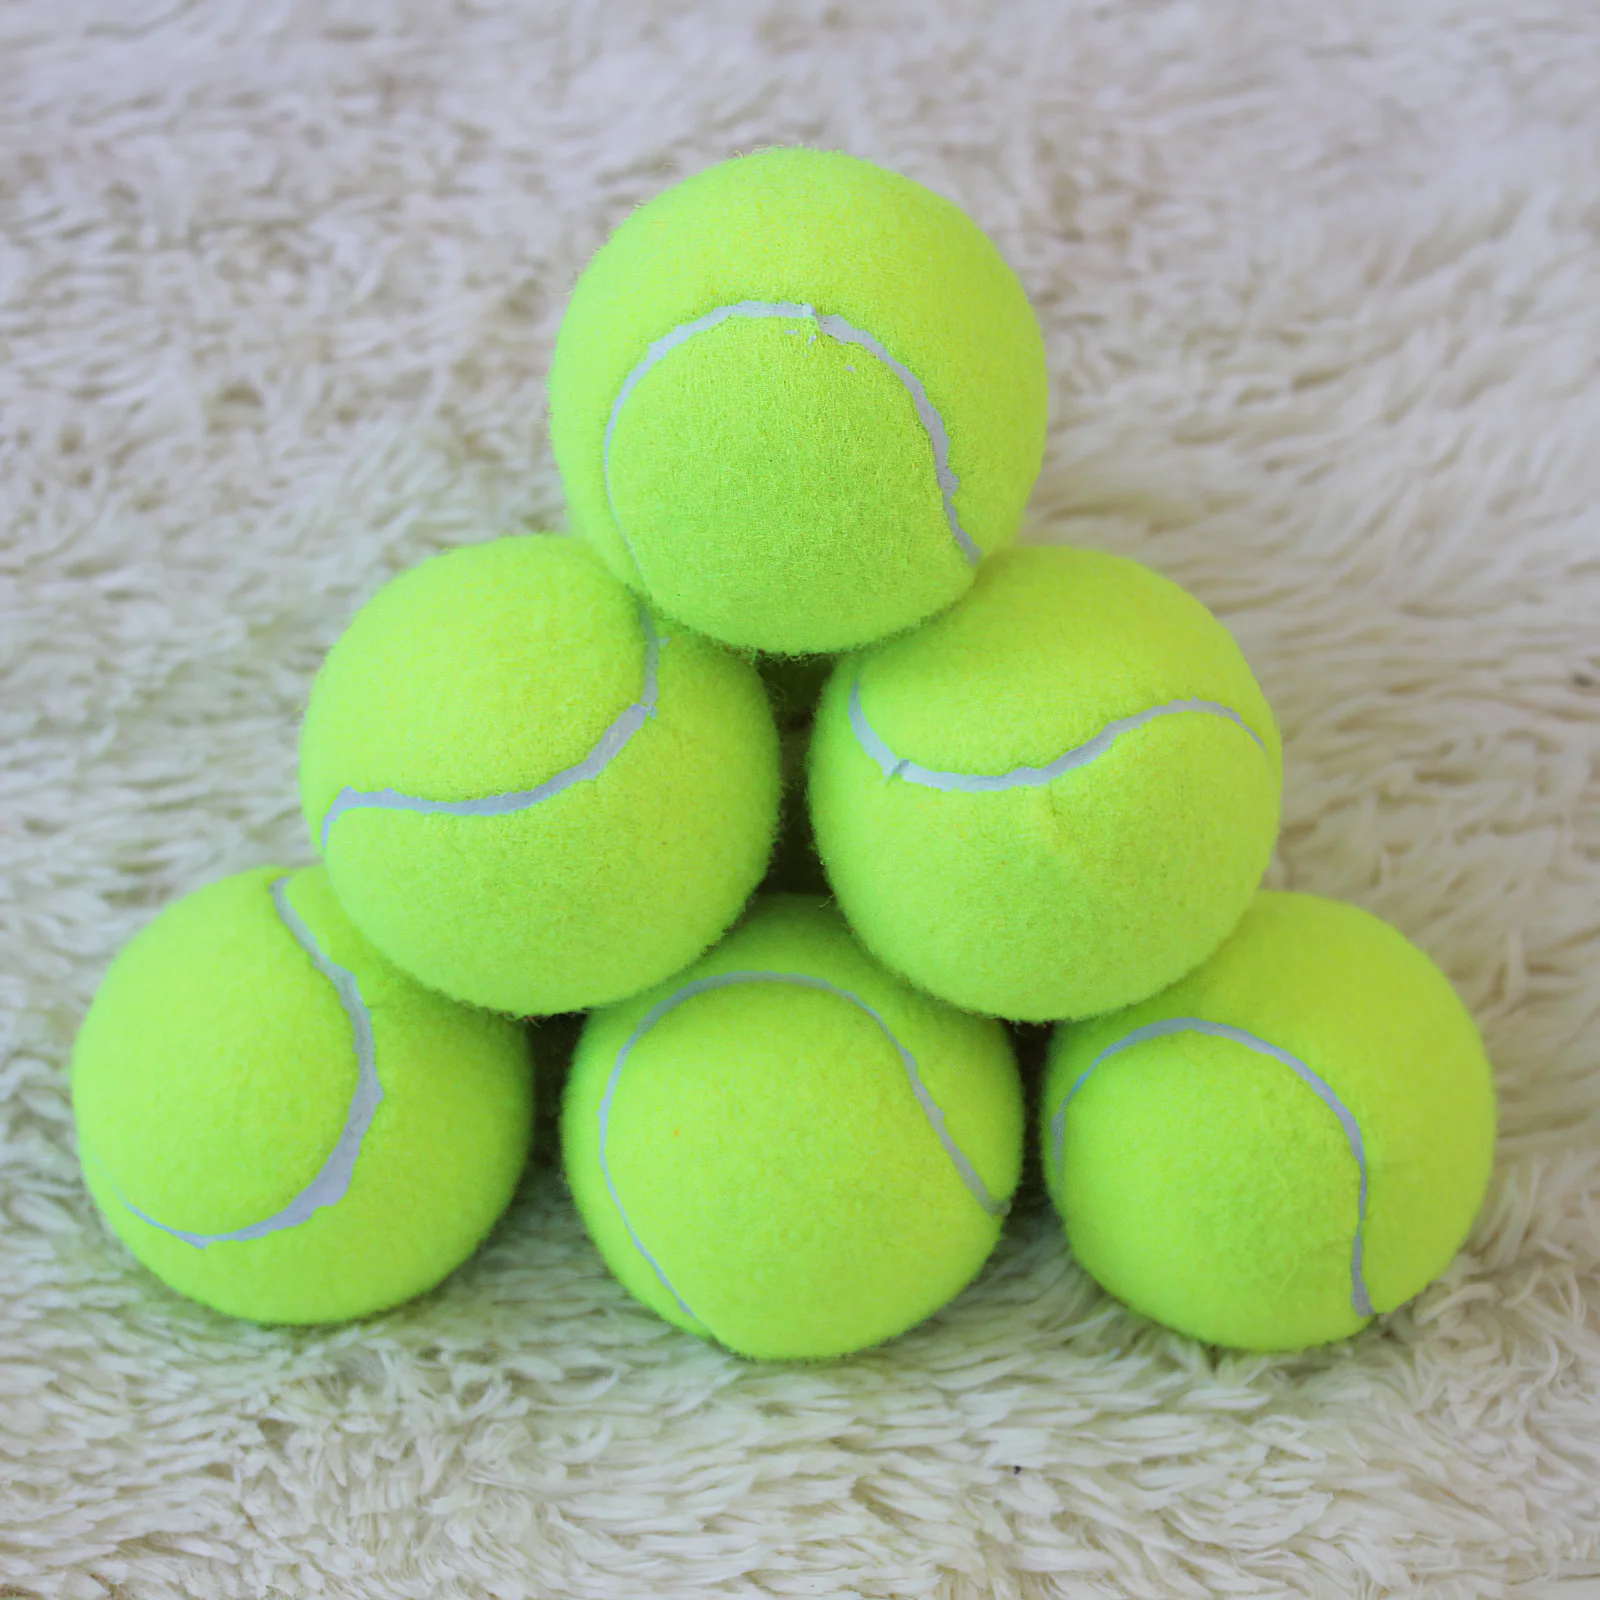 

Прочные жёлтые теннисные мячи, мячи для спортивного турнира, для игр на открытом воздухе, для крикета, пляжа, игры в крикет, тенниса или пляжа